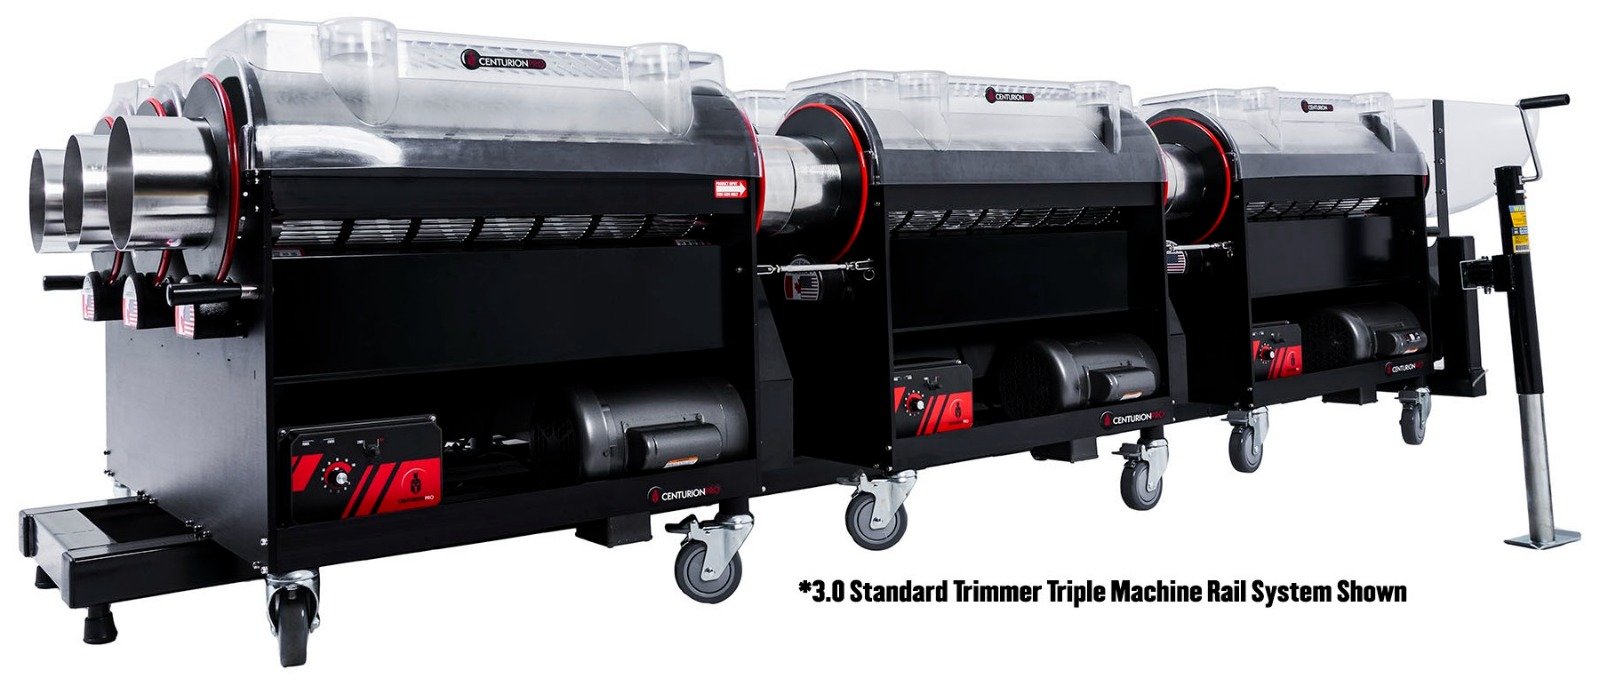 Centurion 3.0 Standard Trimmer Triple Machine Rail System